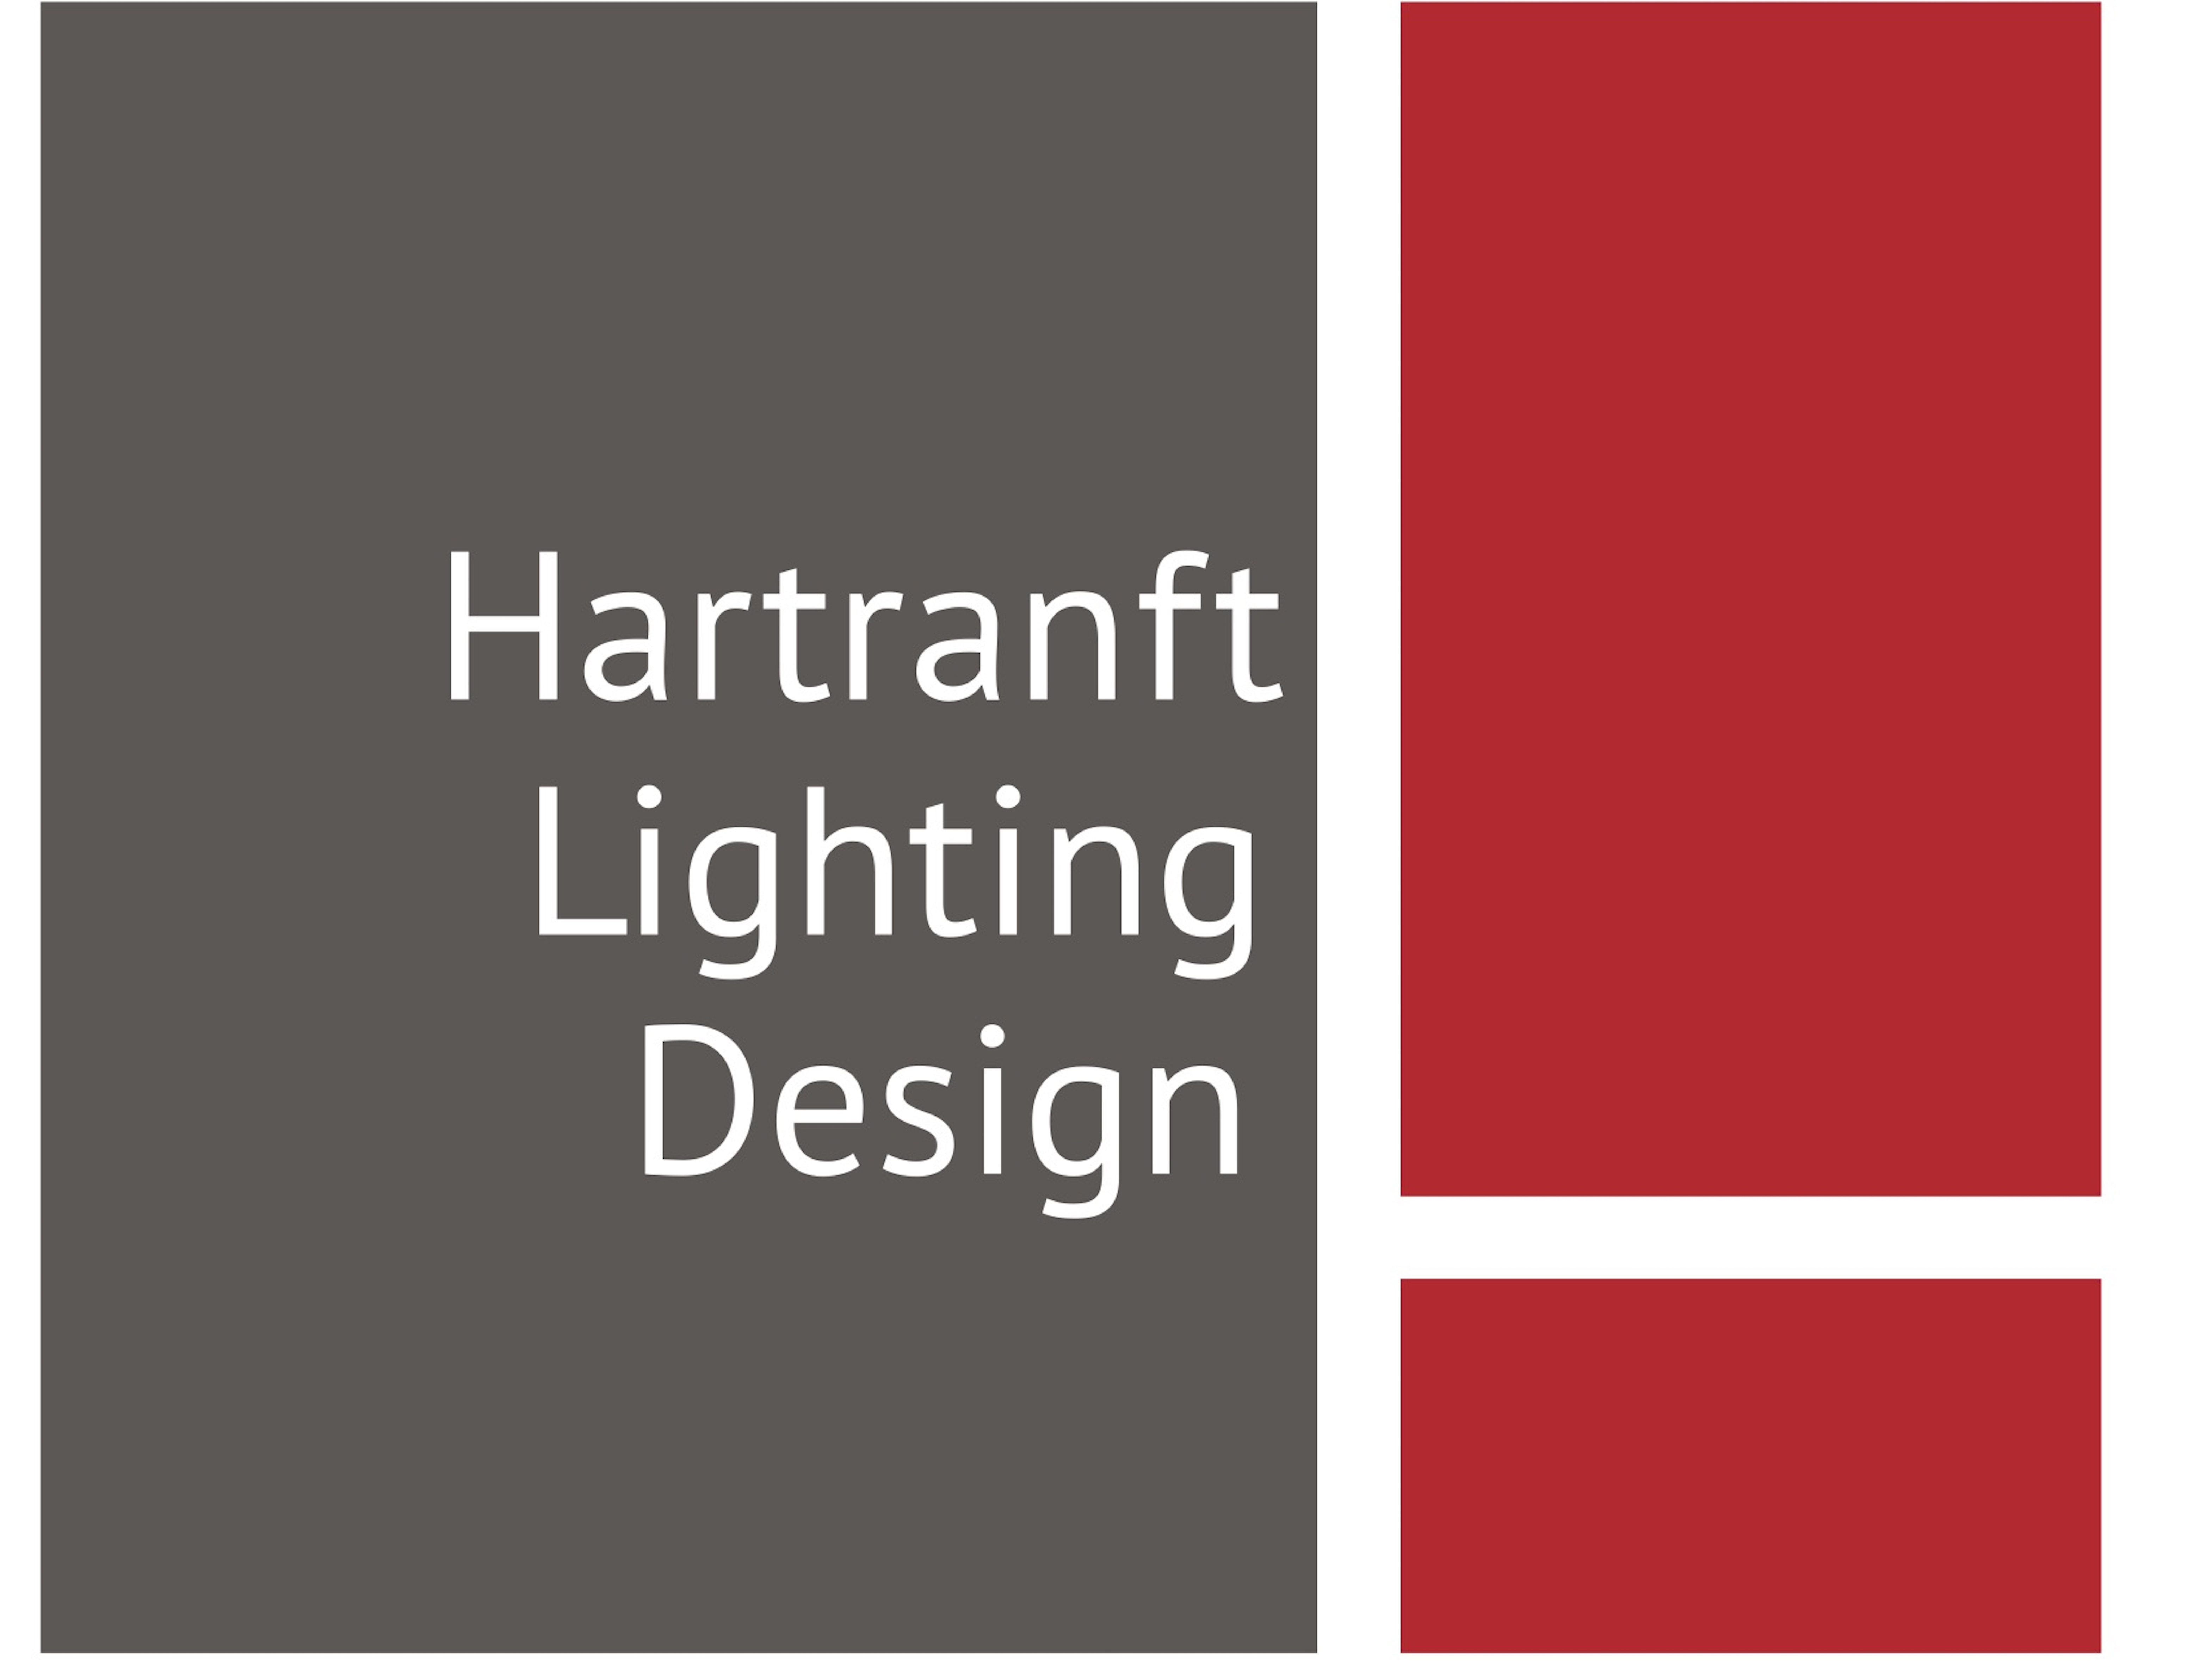 01 Hartranft Lighting Design